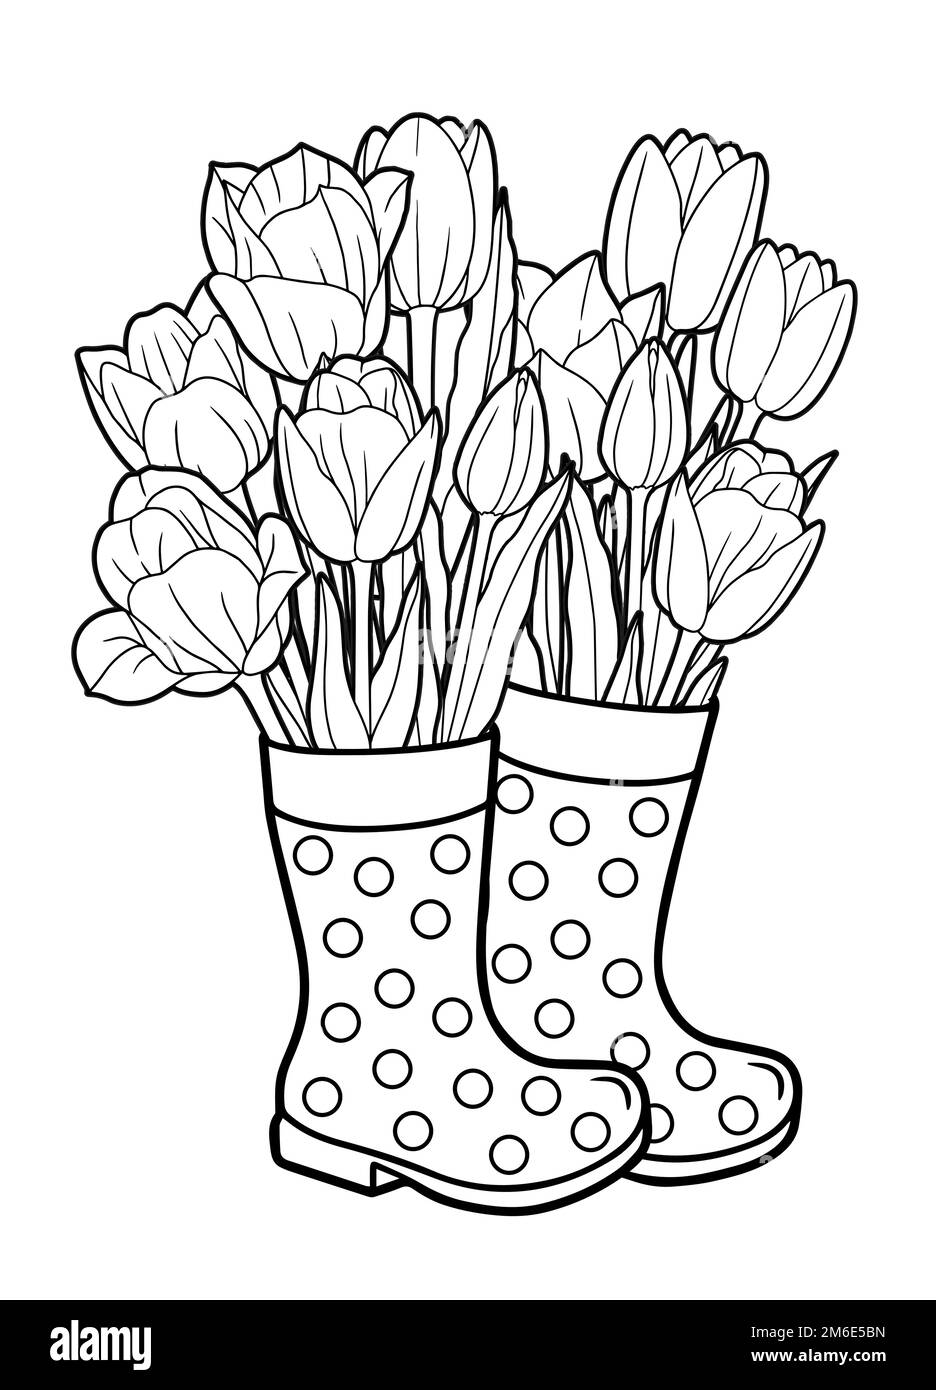 Vektor-Malbuch-Seite für Erwachsene. Ein Strauß Tulpen steht in Gummistiefeln statt in einer Vase Stock Vektor